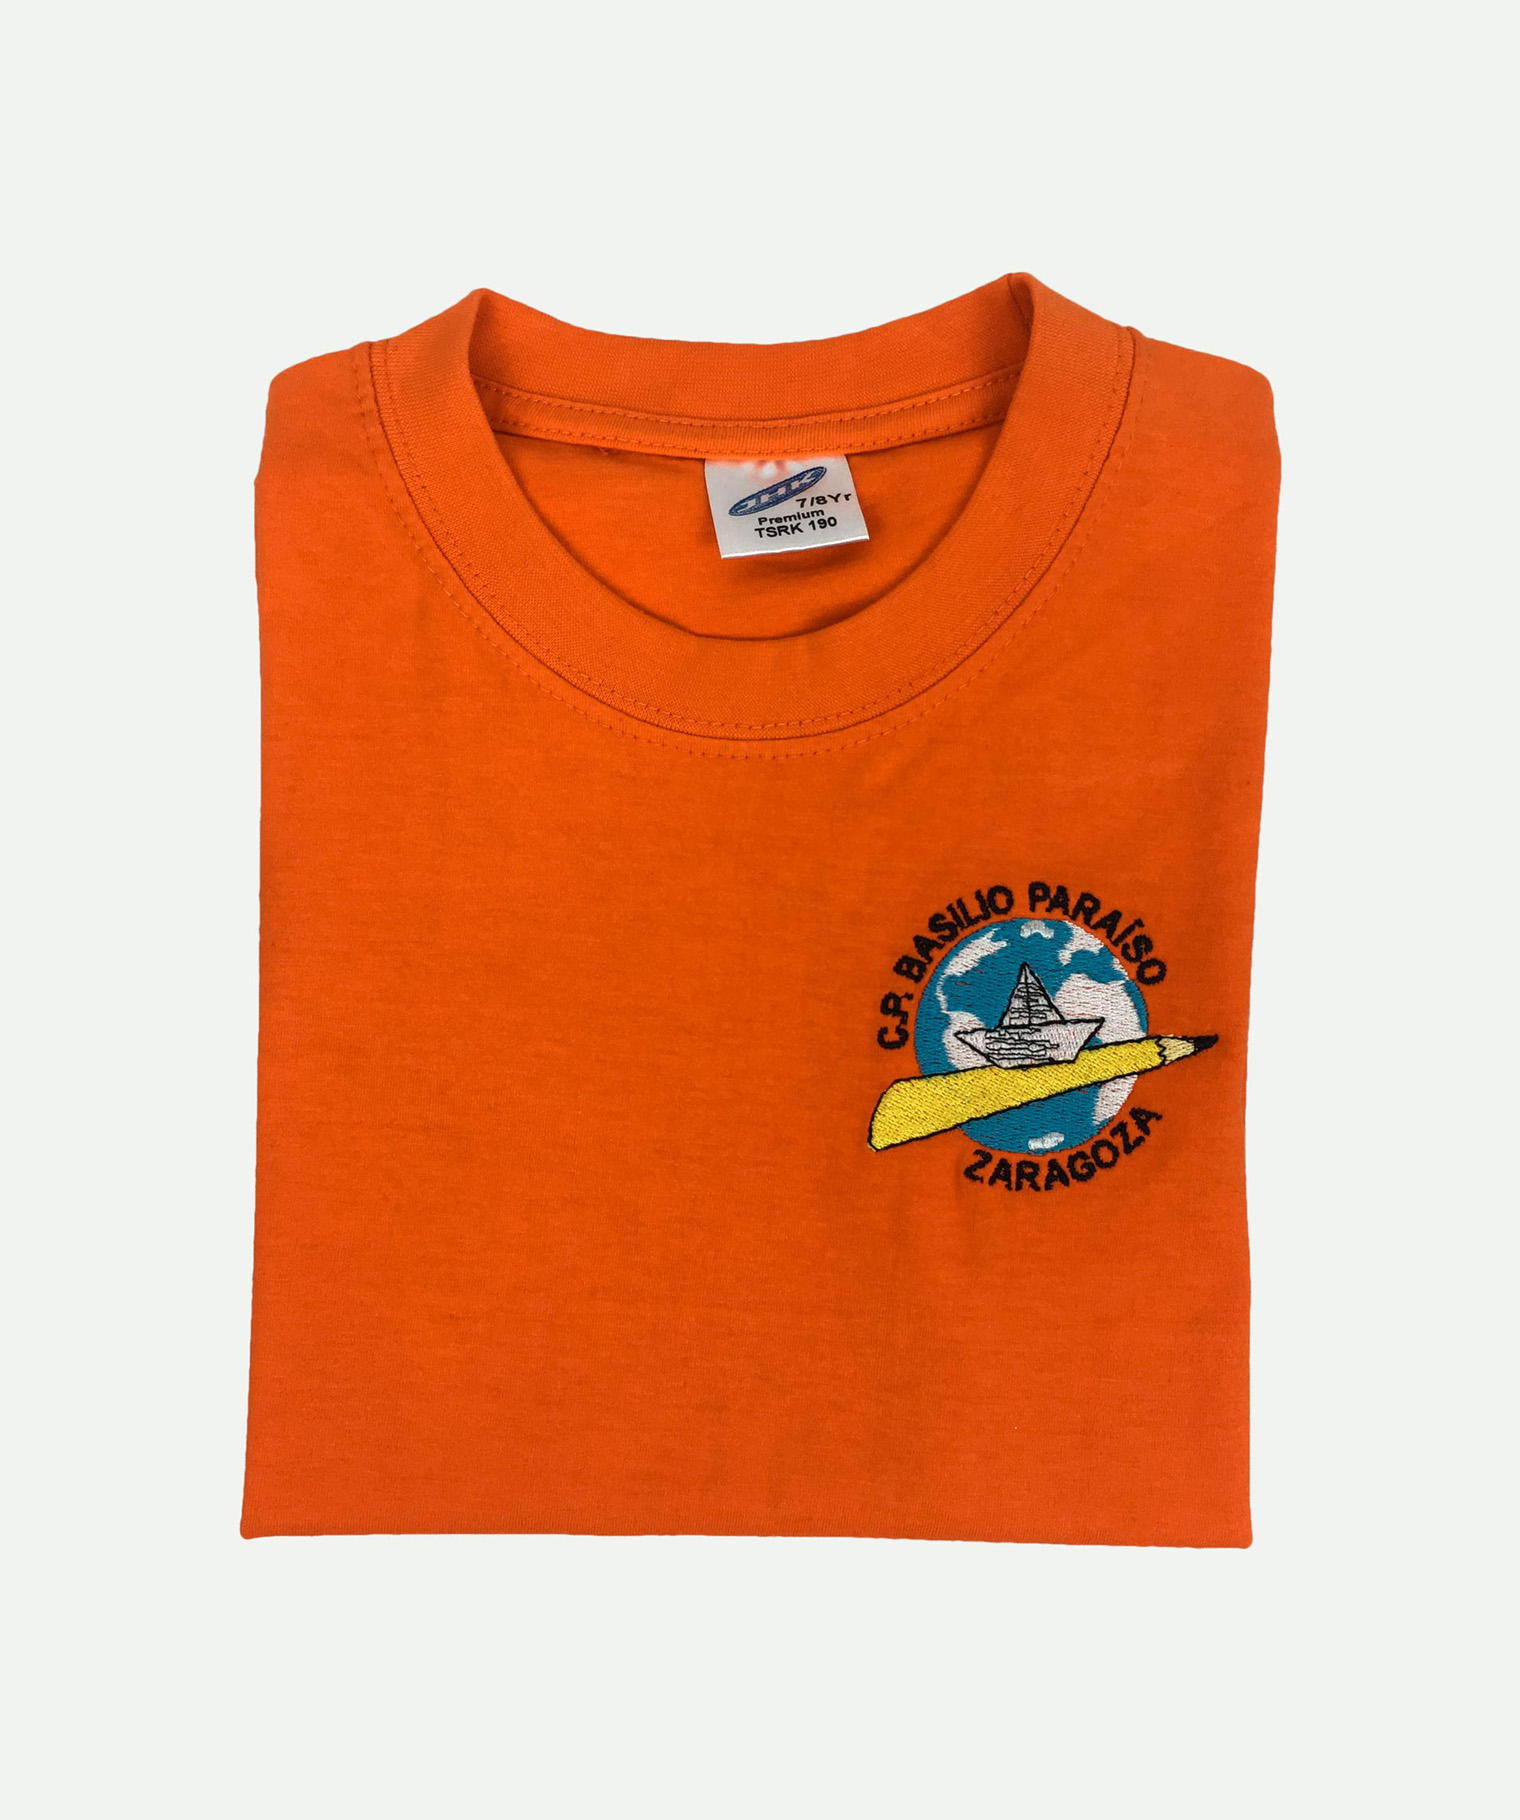 Children's orange embroidered T-shirt